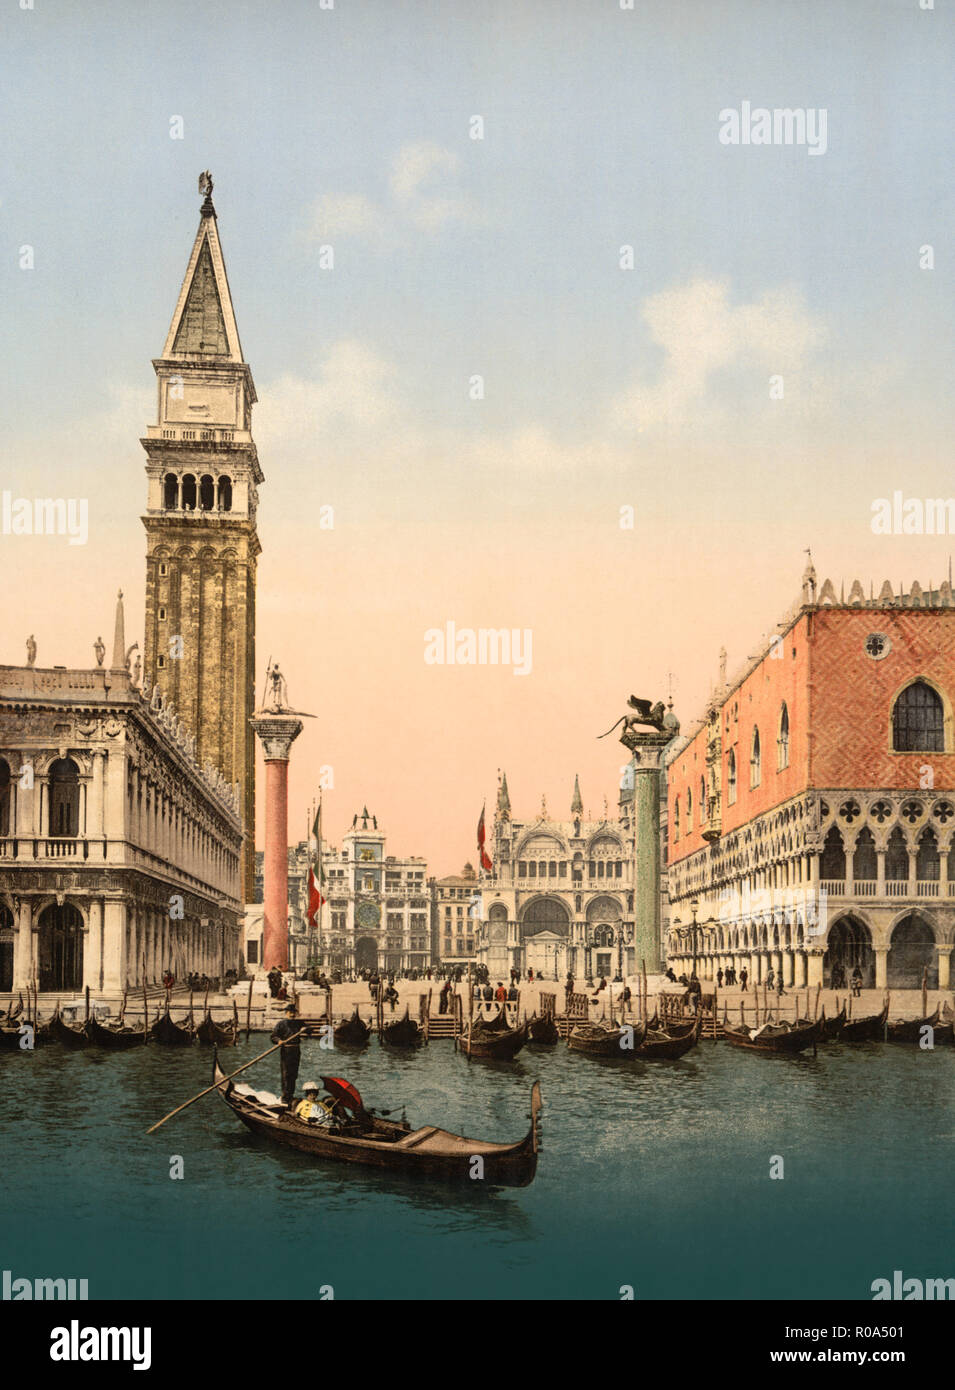 La Place Saint Marc avec le Campanile, Venise, Italie, impression Photochrome, Detroit Publishing Company, 1900 Banque D'Images